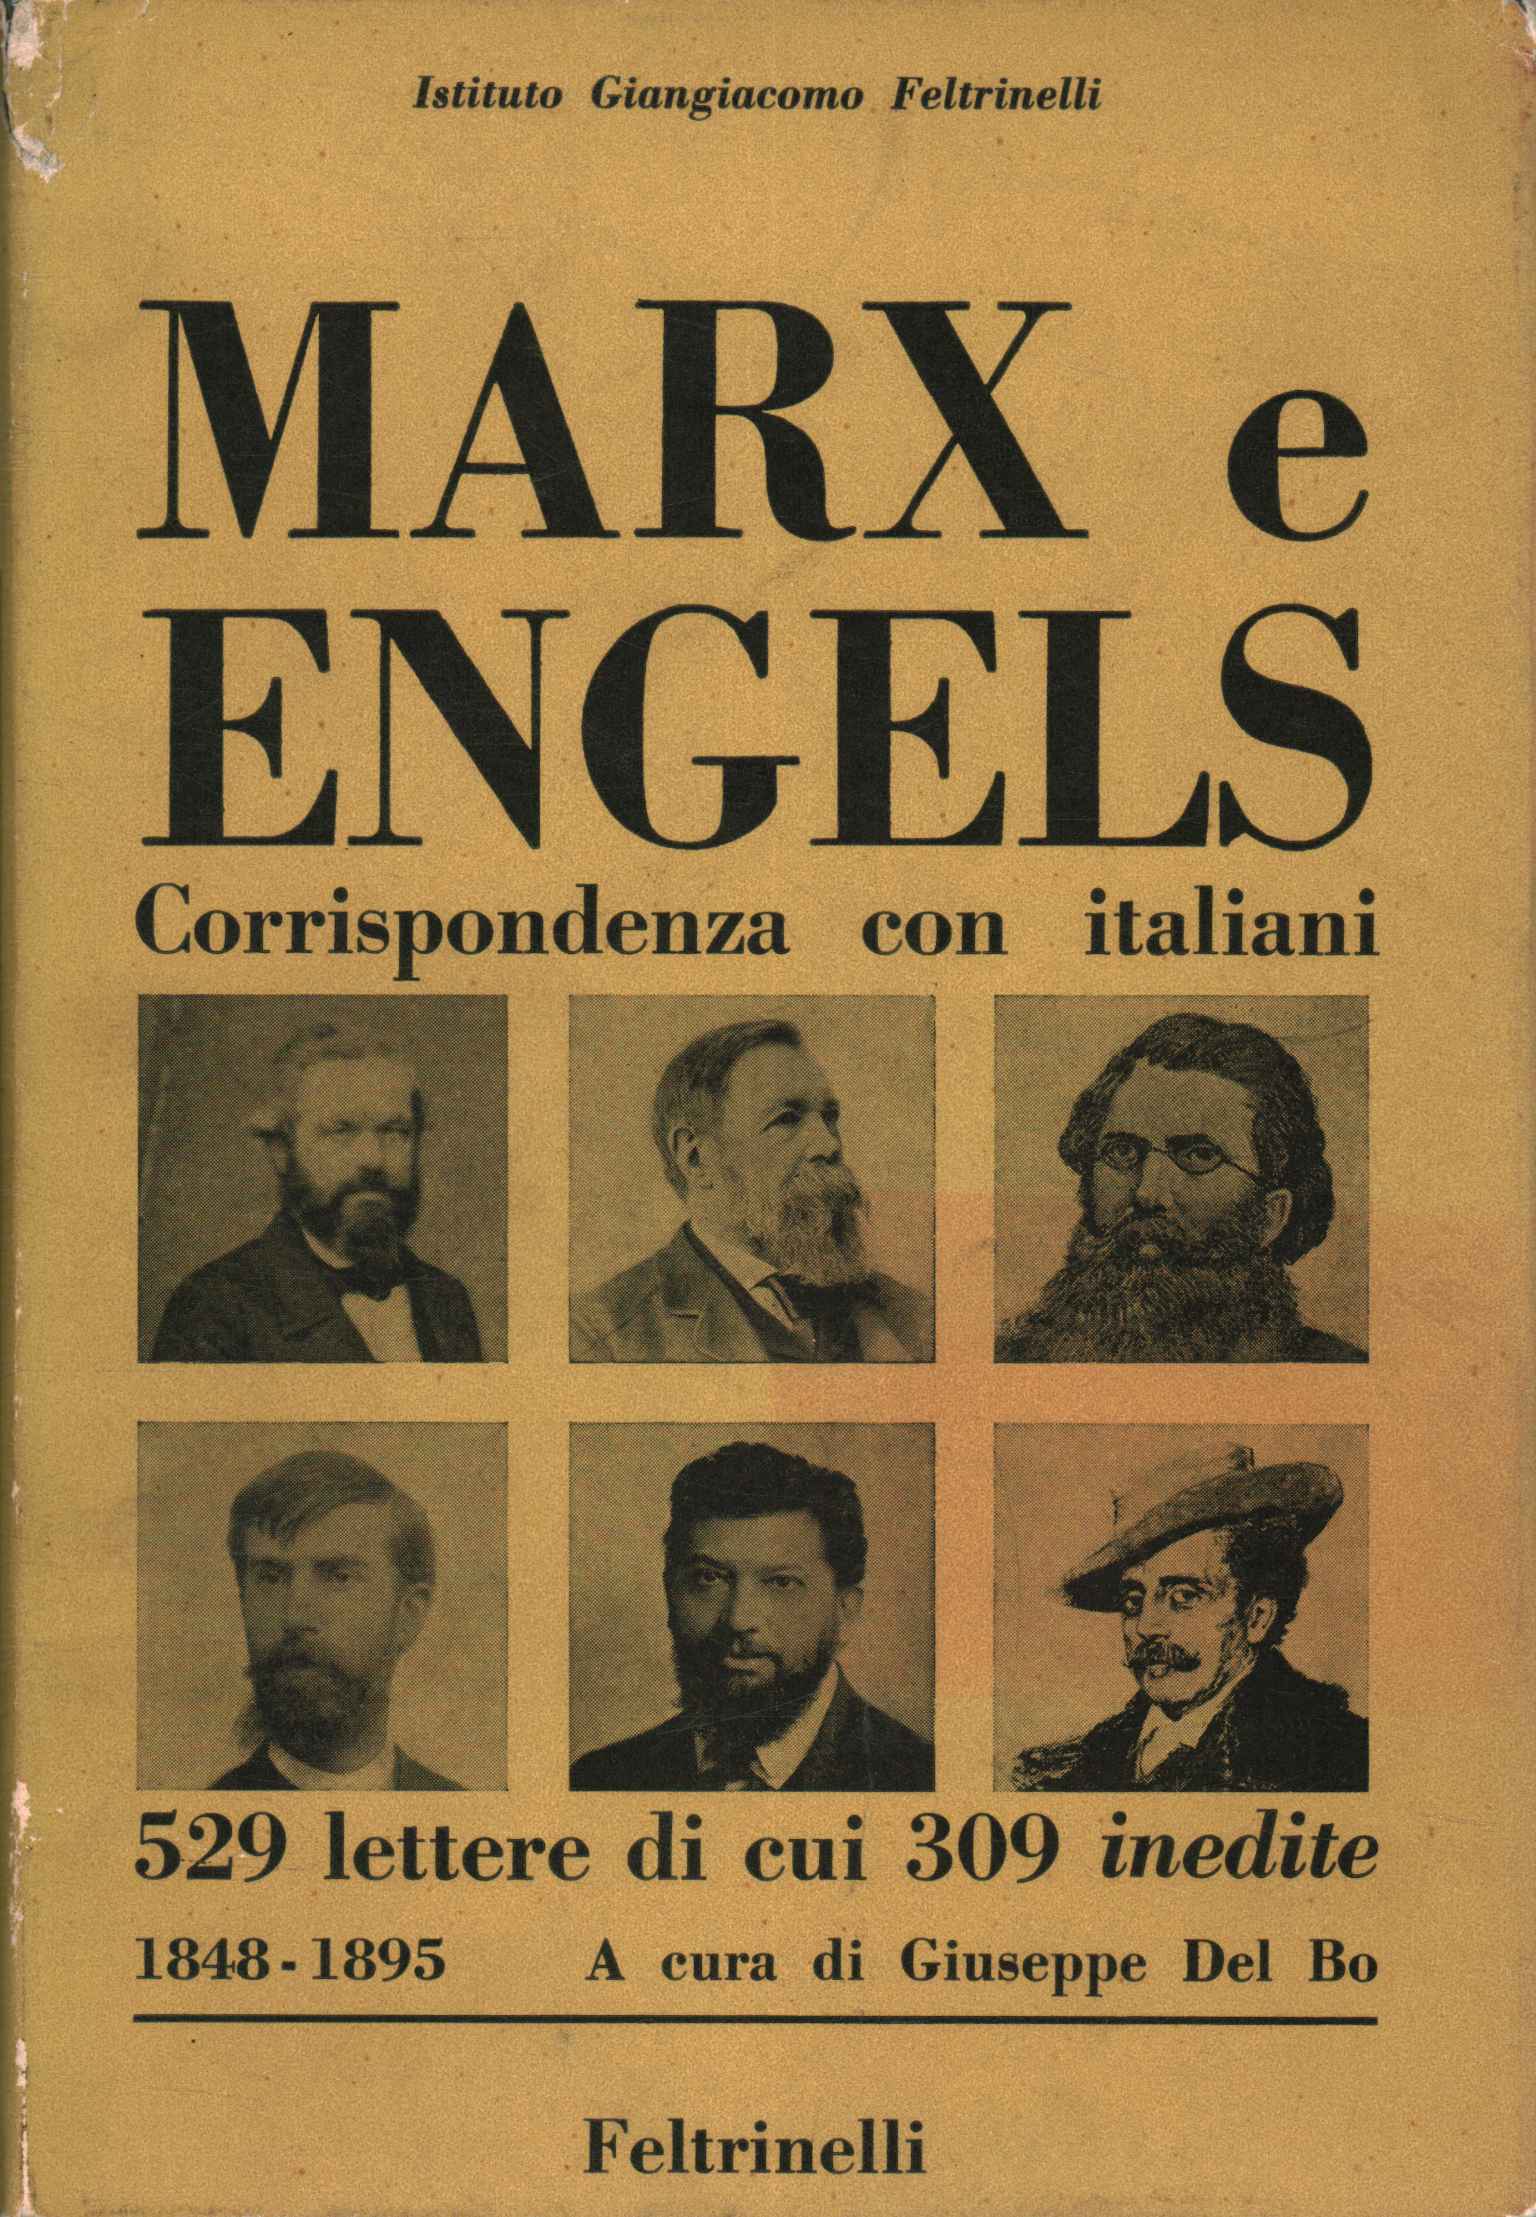 Der Briefwechsel von Marx und Engels mit